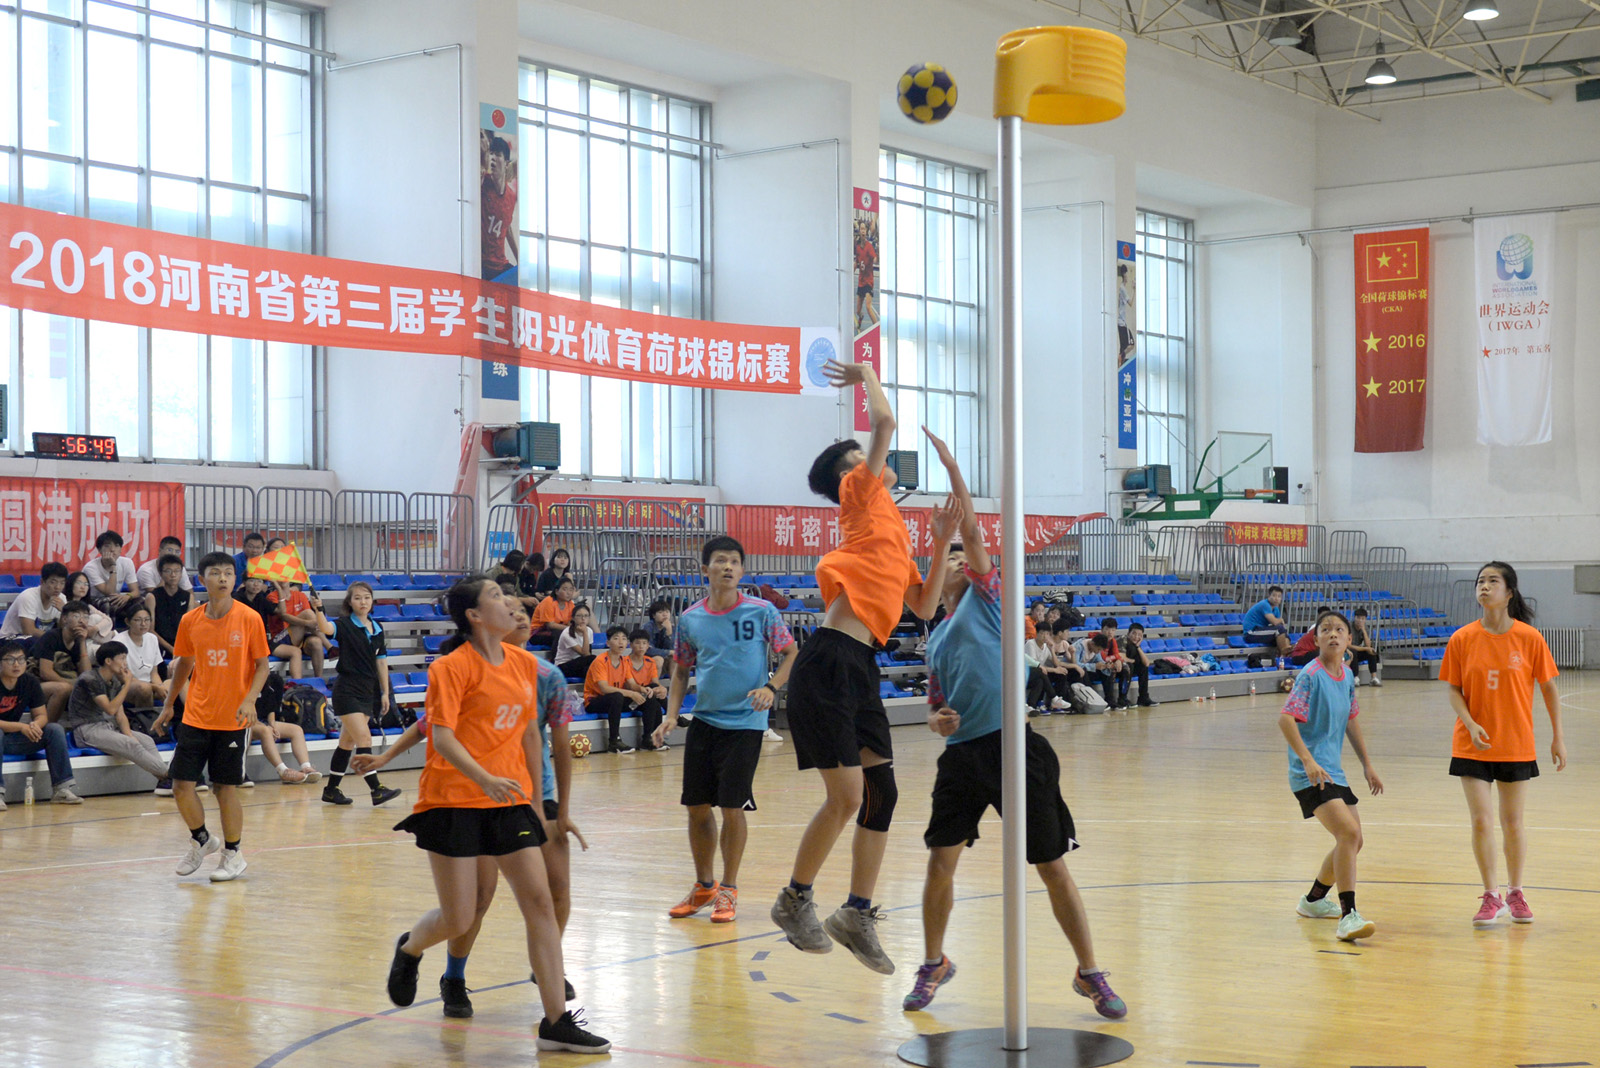 二附中在2018年河南省第三届学生"阳光"体育荷球锦标赛中荣获高中组第